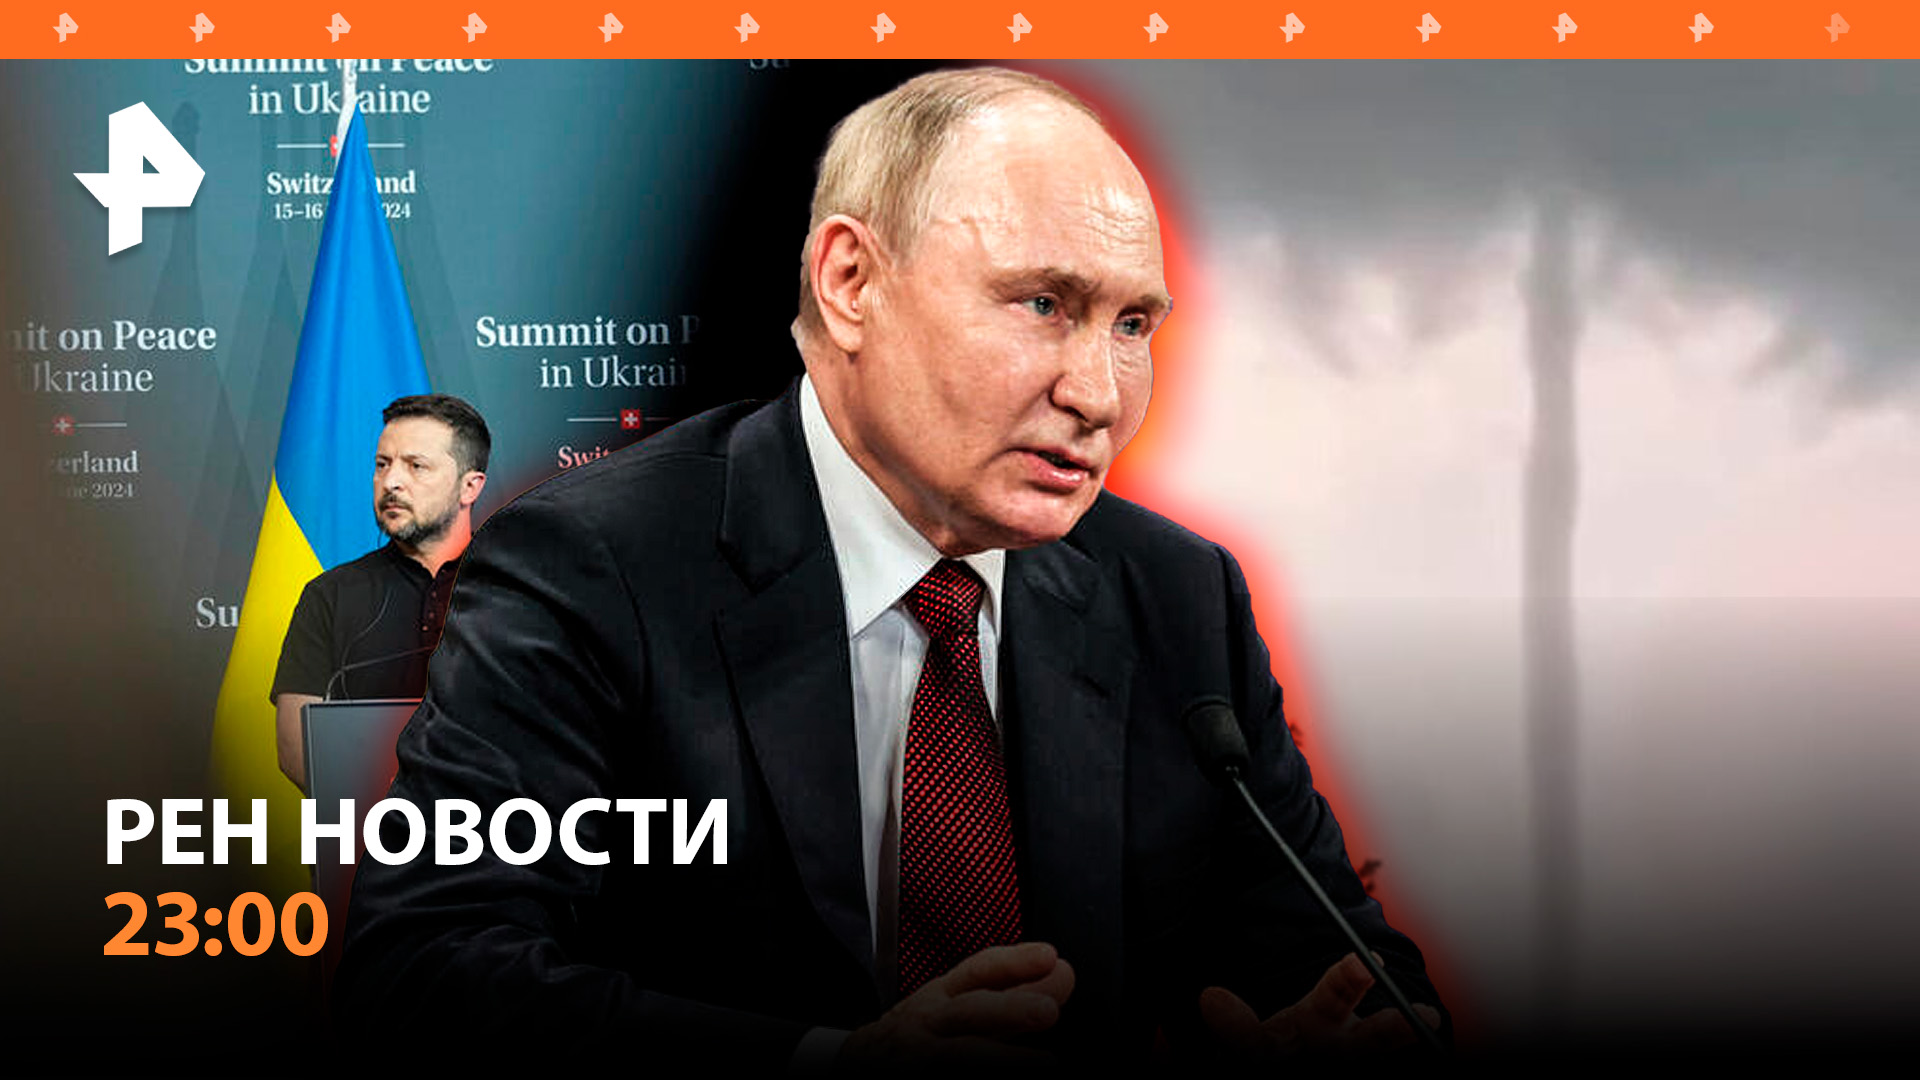 Путин подвел итоги поездки в Азию / Что ждет Украину? / Мощный шторм в Москве / РЕН НОВОСТИ 23:00